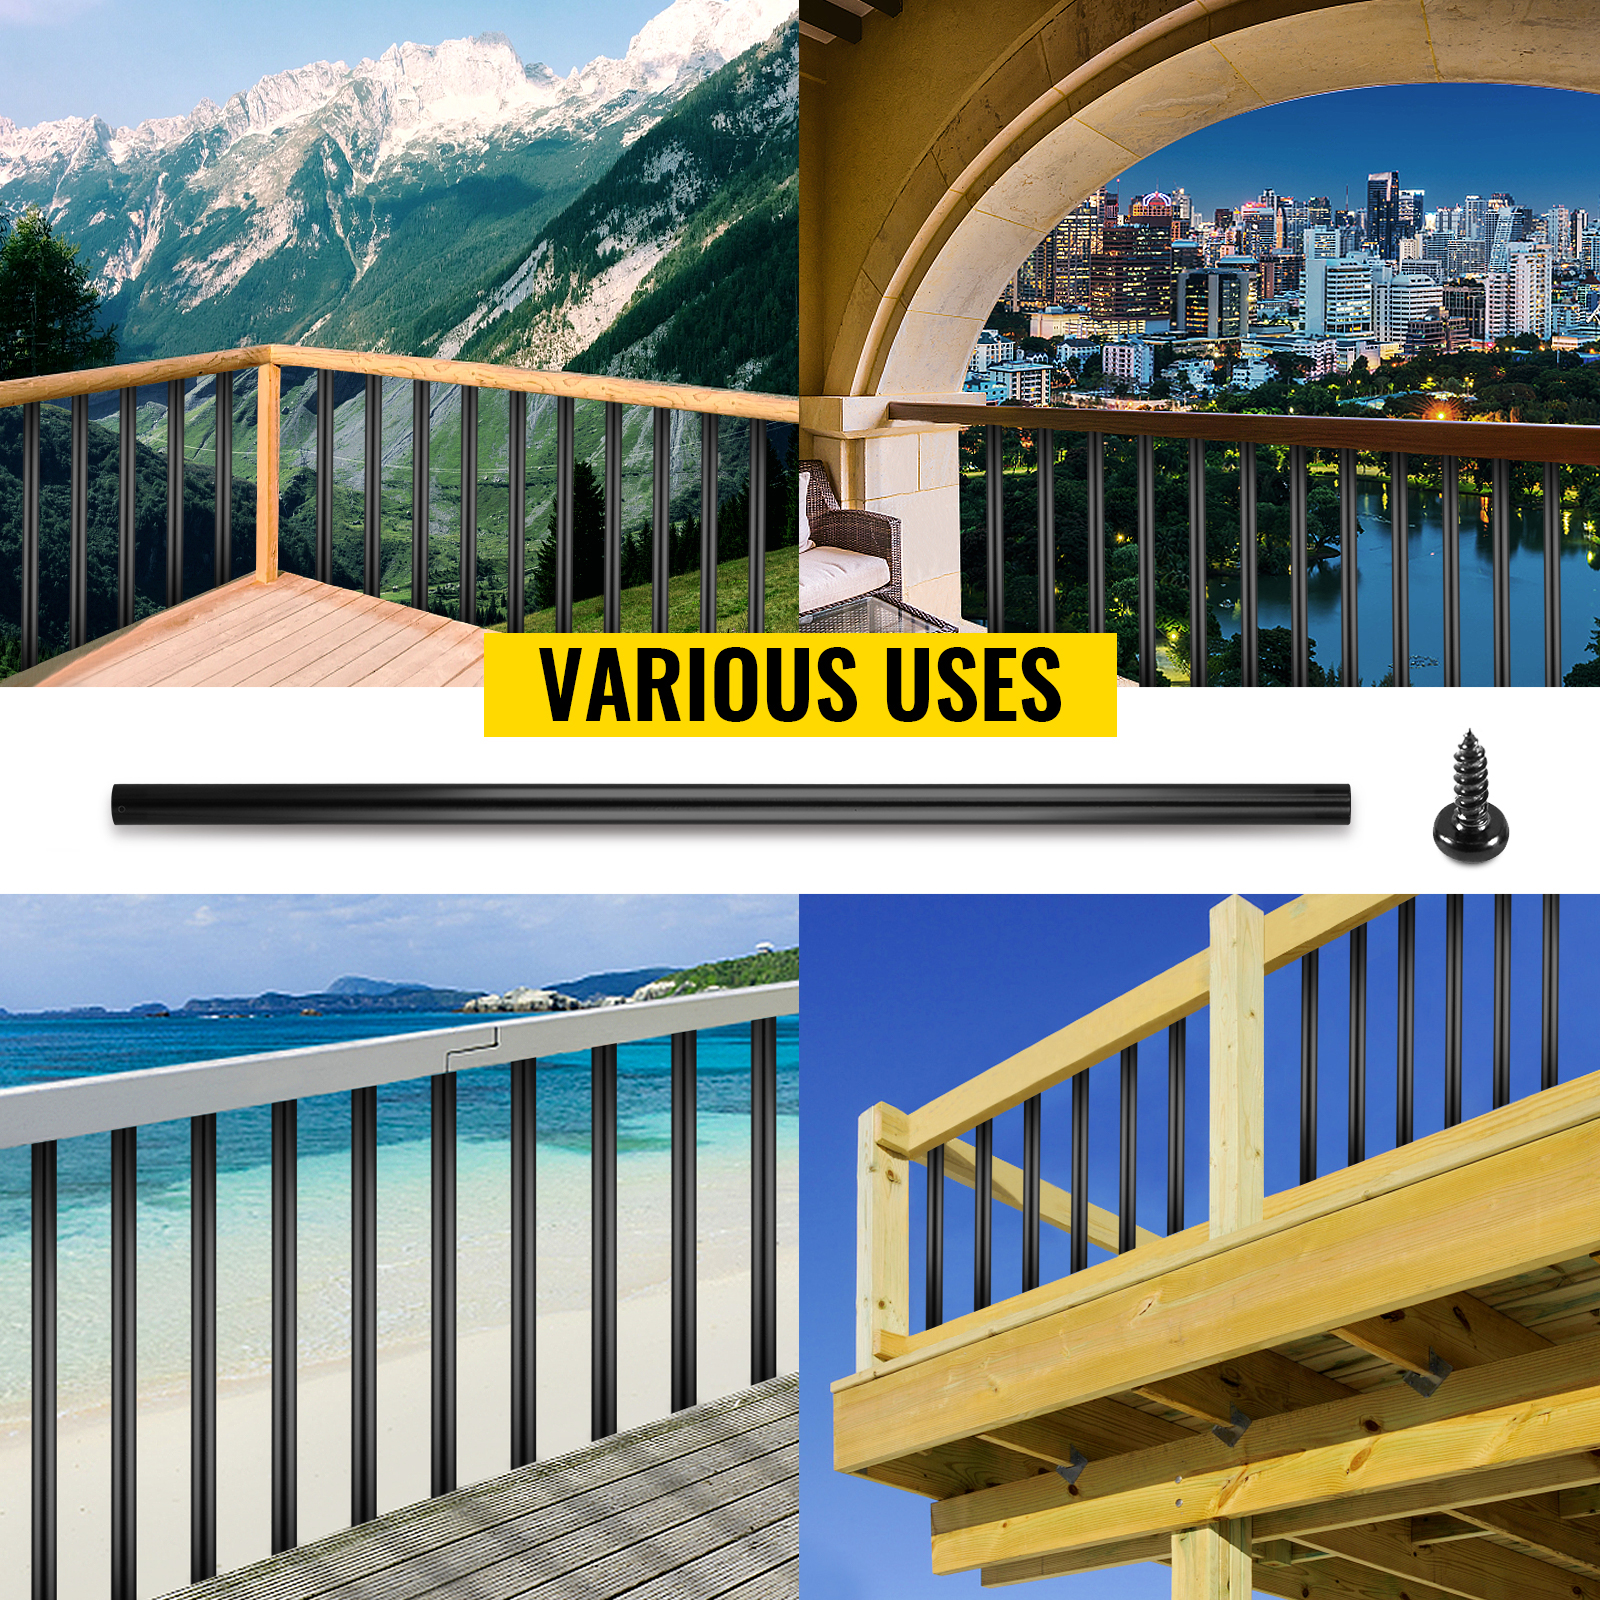 Balaustres de husillo de madera para escaleras interiores, barandilla de  escalera de cubierta, husillos de balaustre para interior escalera, balcón